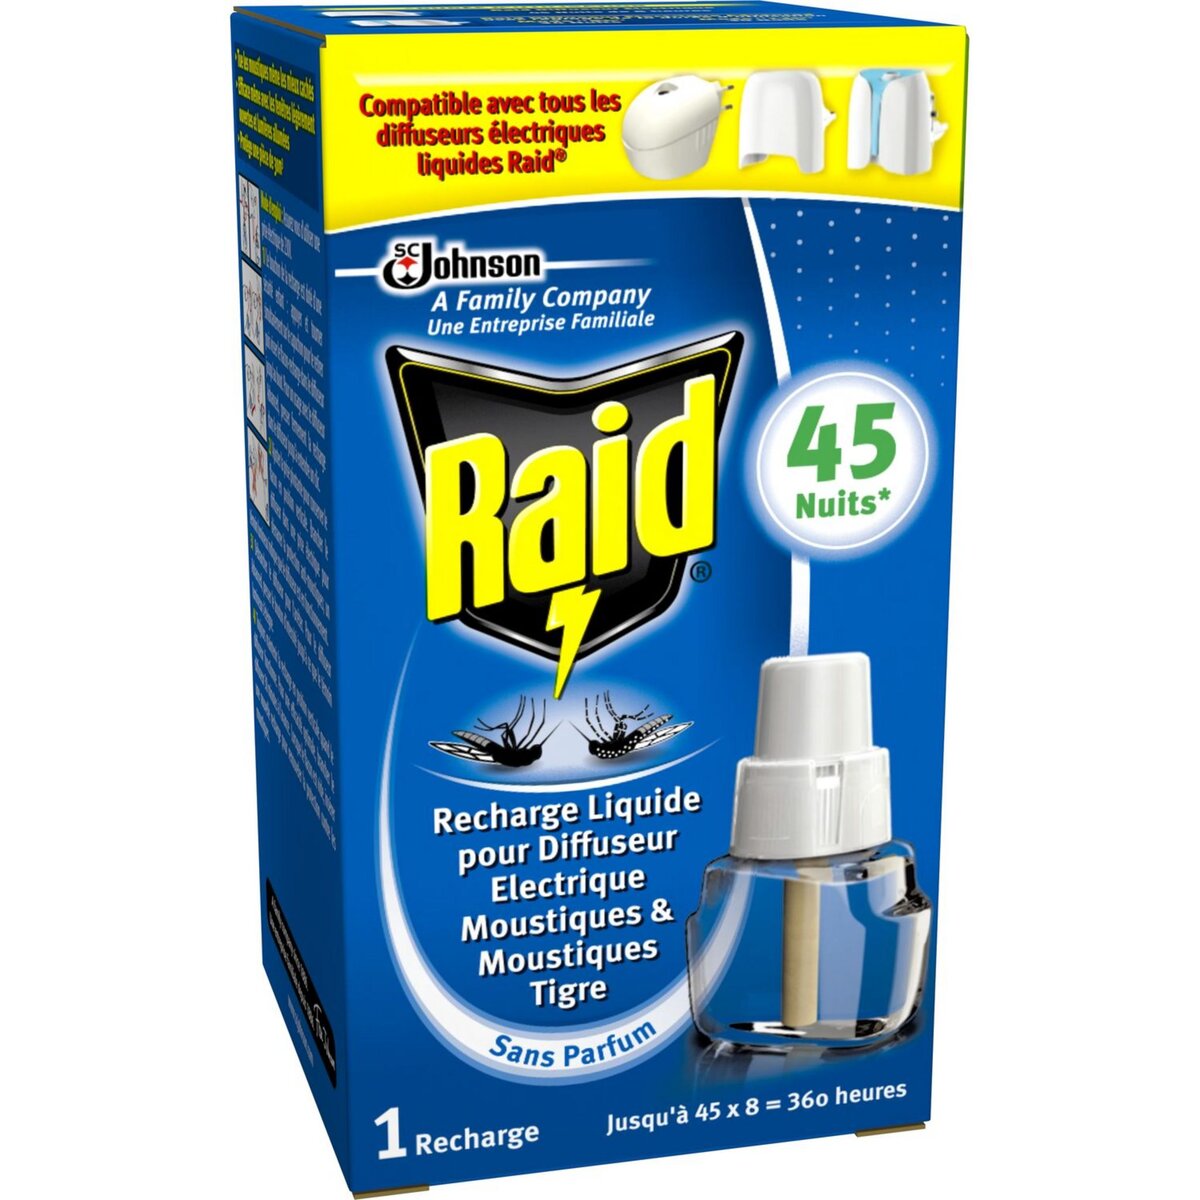 RAID Recharge diffuseur électrique anti-moustiques & moustiques-tigres efficace 45 nuits 1 recharge